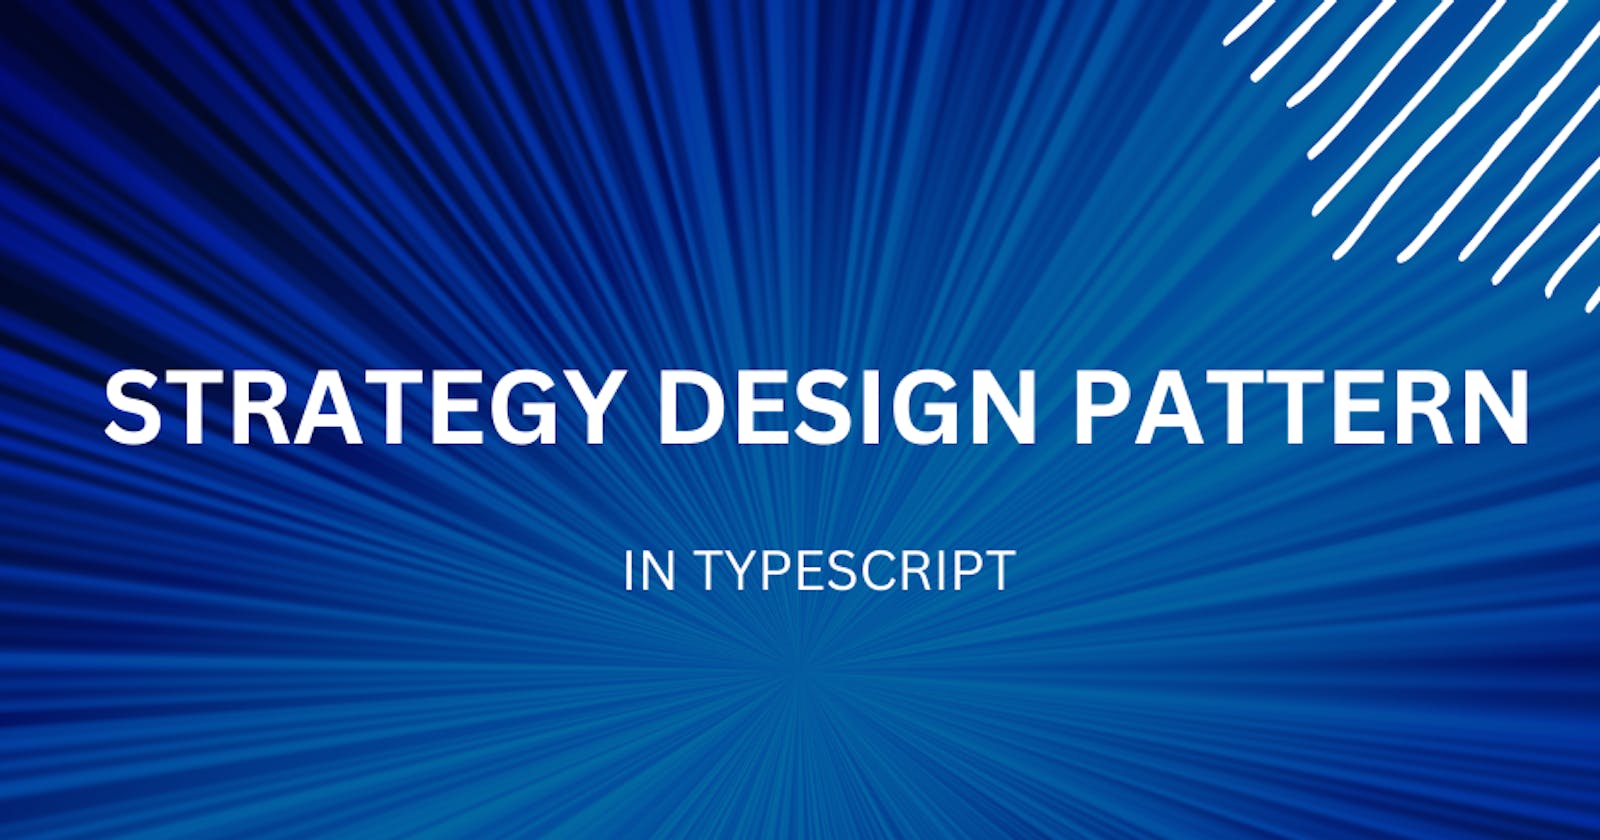 Strategy Design Pattern in Typescript